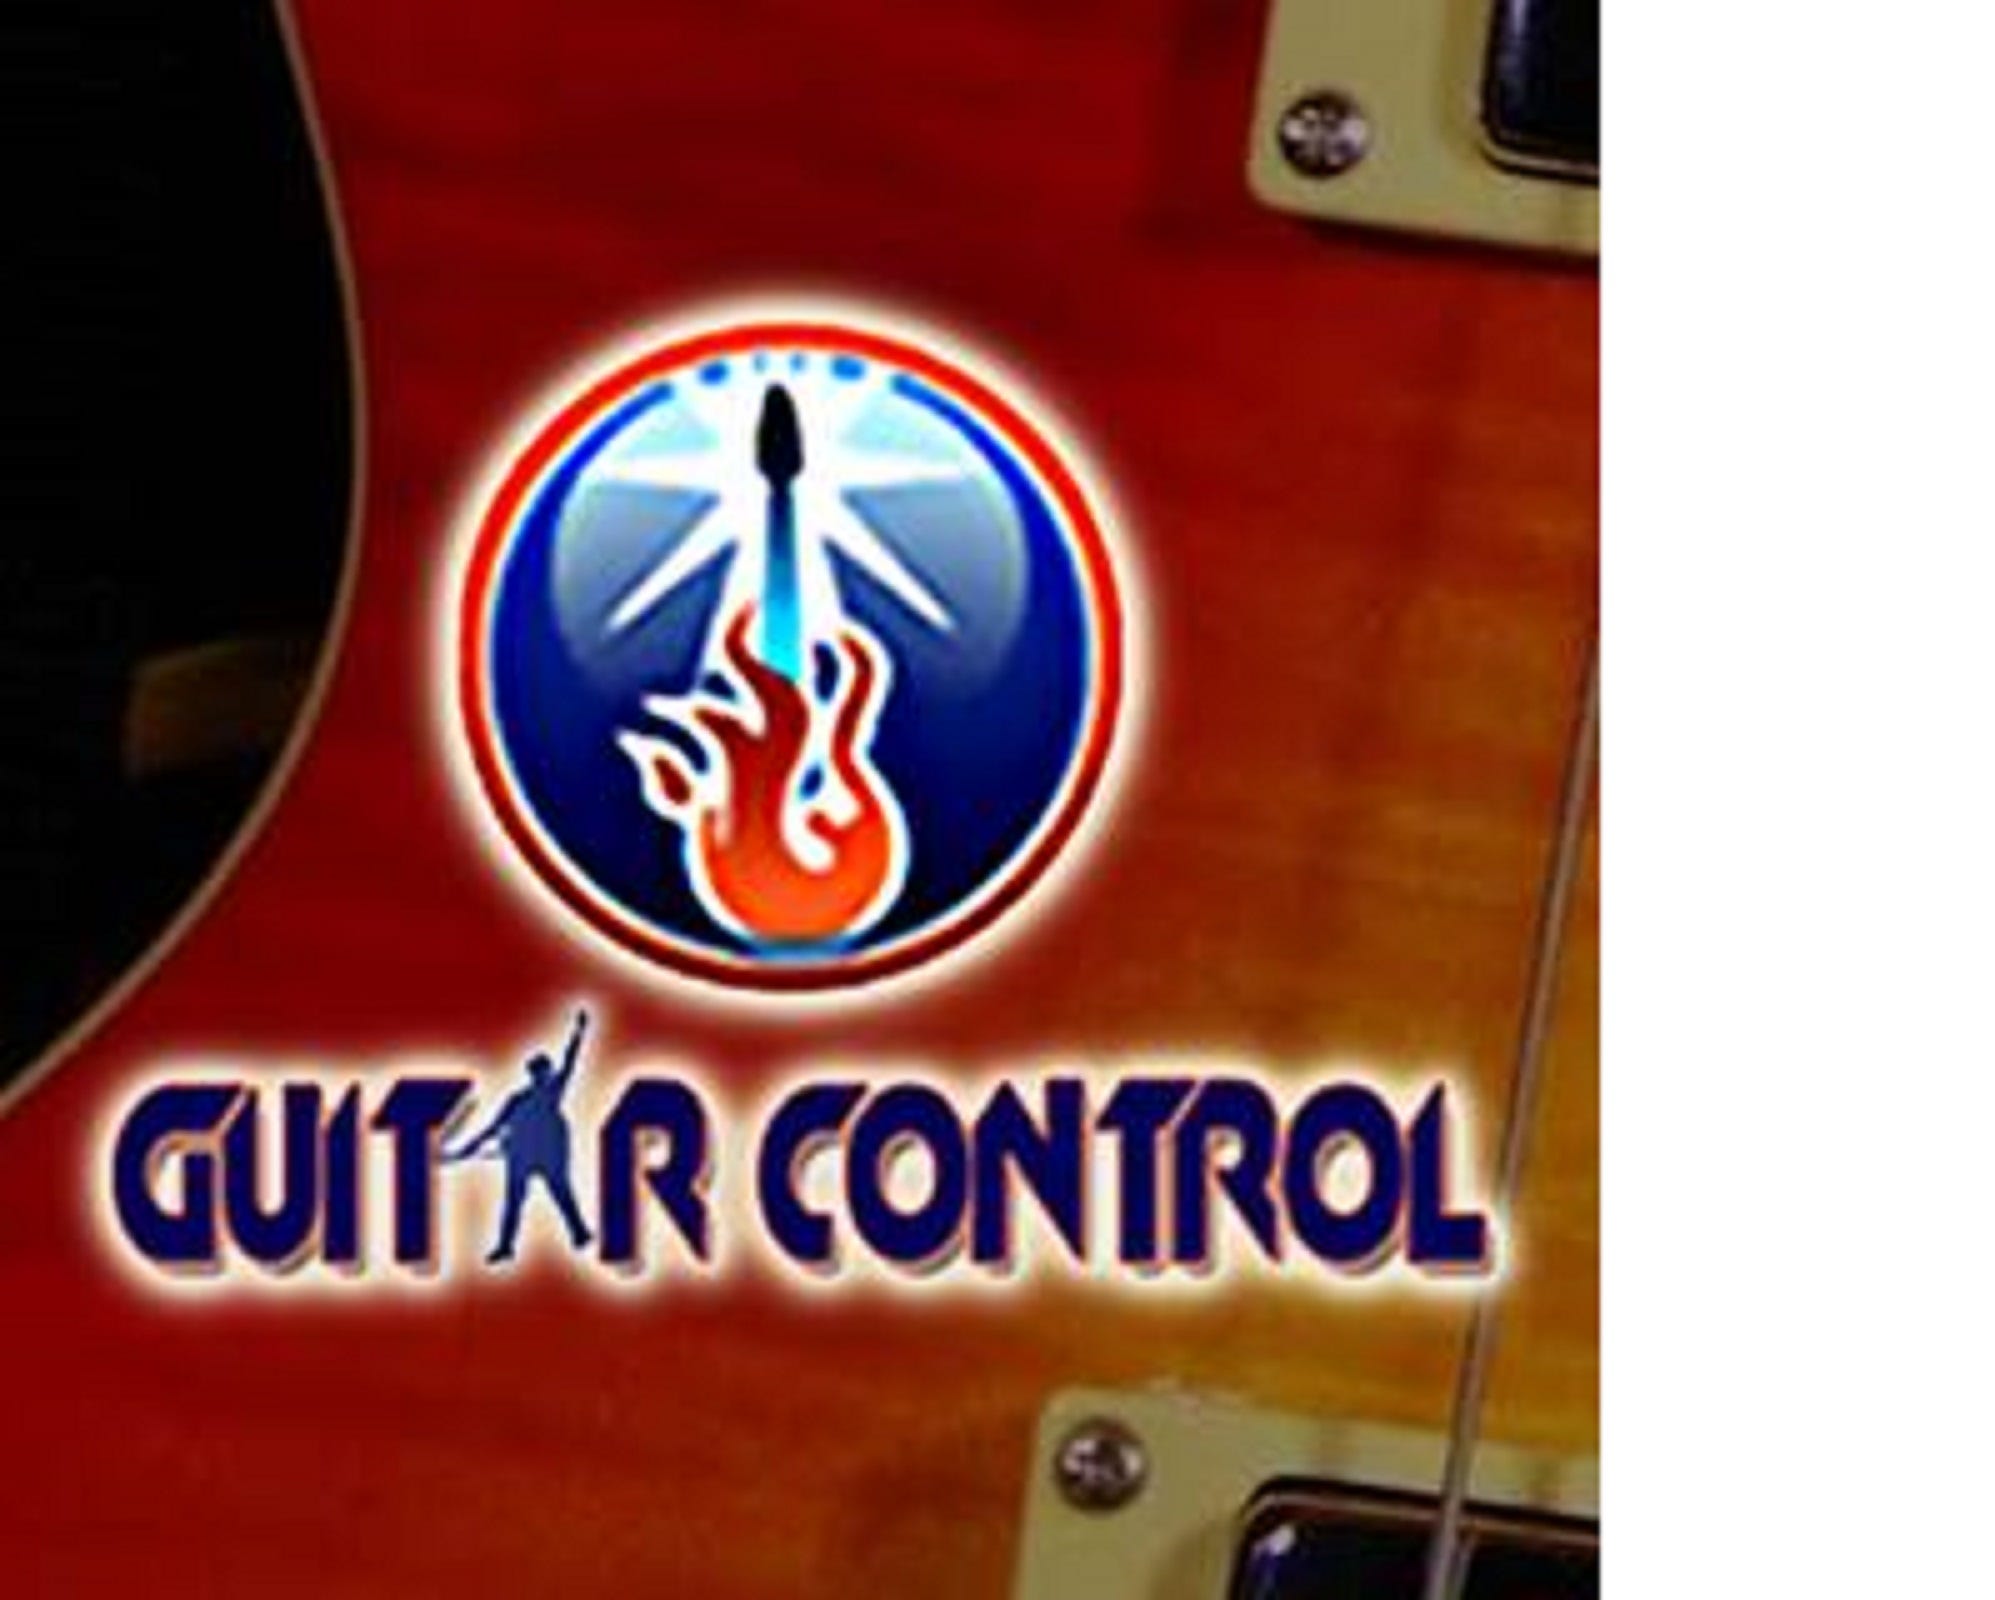 Artwork for Guitar Control